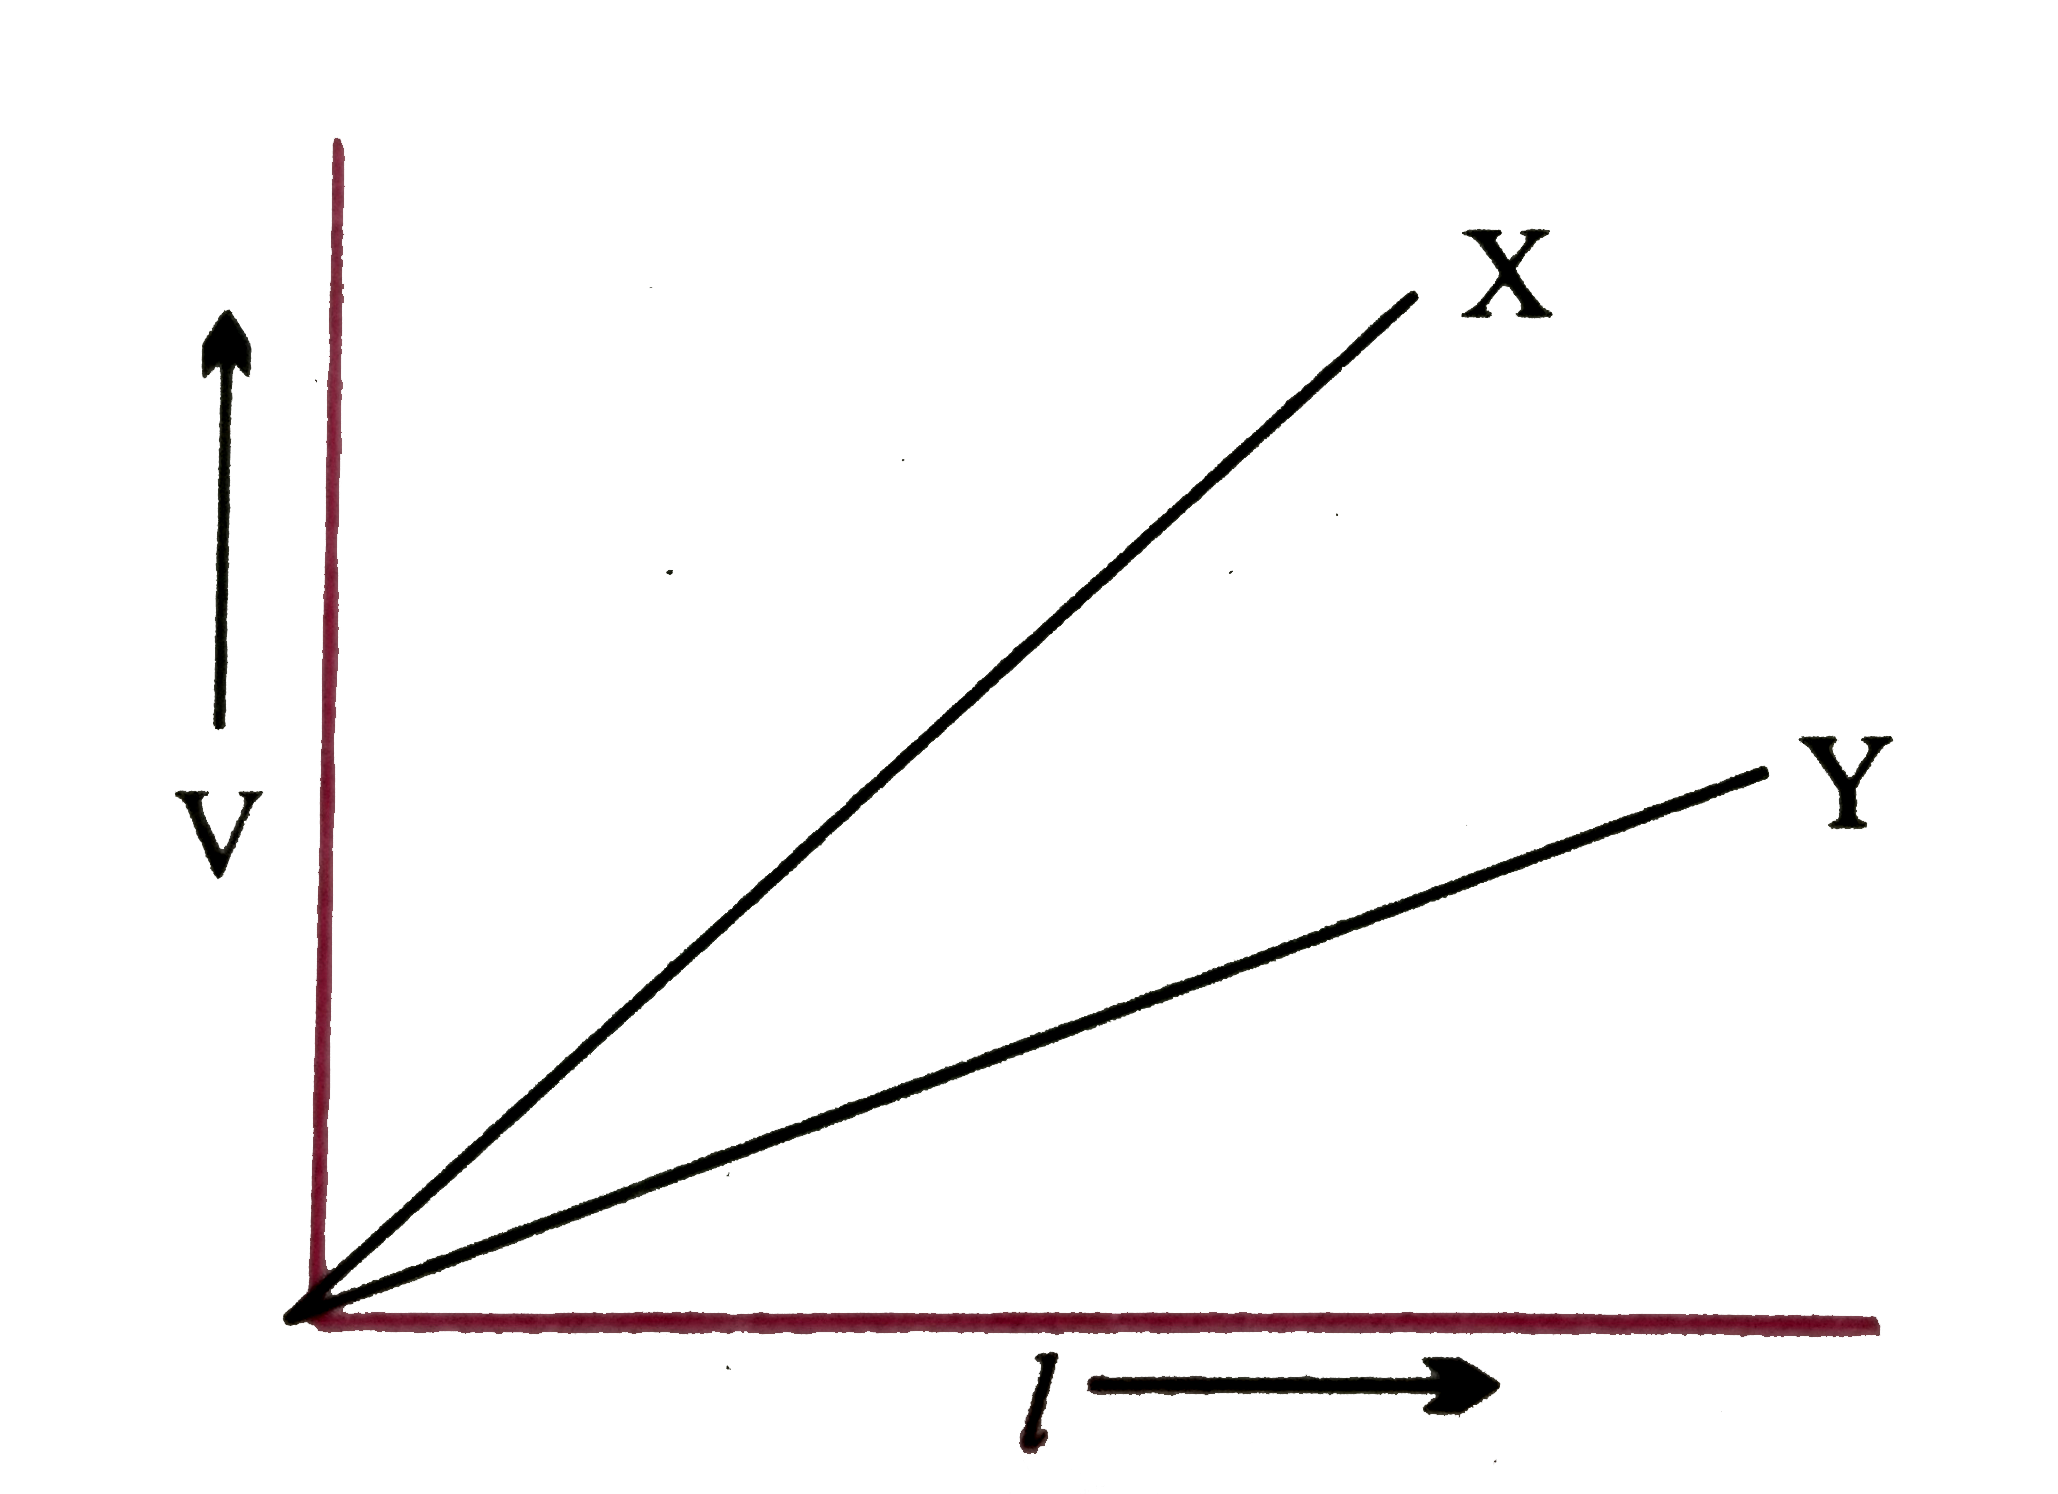 दो विभवमापी   X  और   Y के लिए   चित्र  में लम्बाई  l  के साथ  विभवांतर  में परिवर्तन  को प्रदर्शित  किया गया है  । दो  वि । वा  बलों कि तुलना  करने के लिए  दोनों में से किसे  प्राथमिकता  देंगे  और क्यों ?